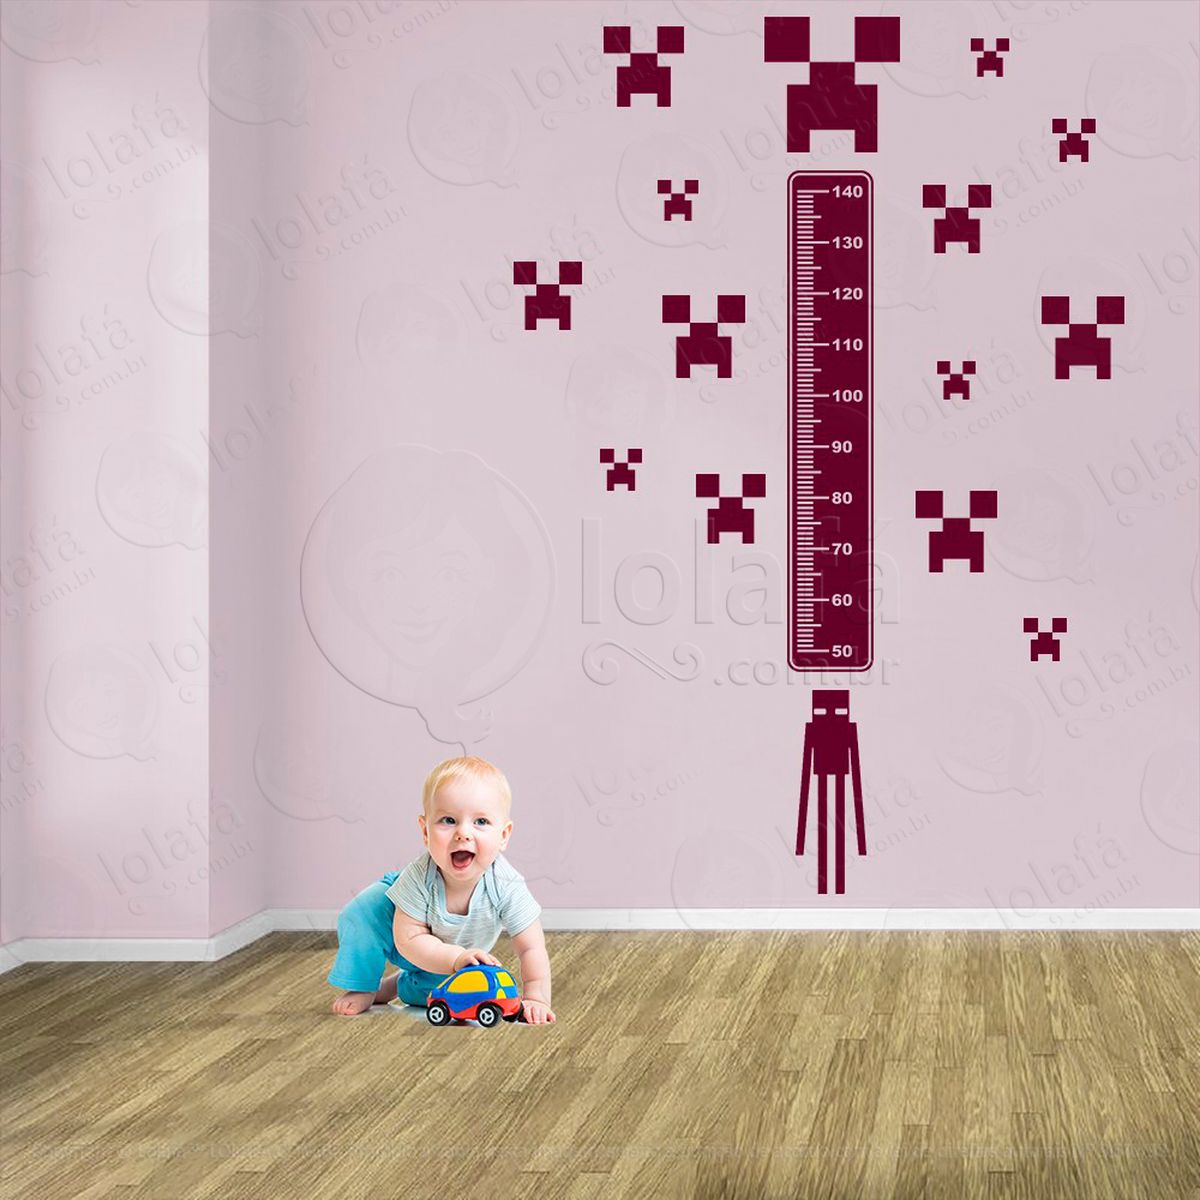 minecraft e minecraft adesivo régua de crescimento infantil, medidor de altura para quarto, porta e parede - mod:744